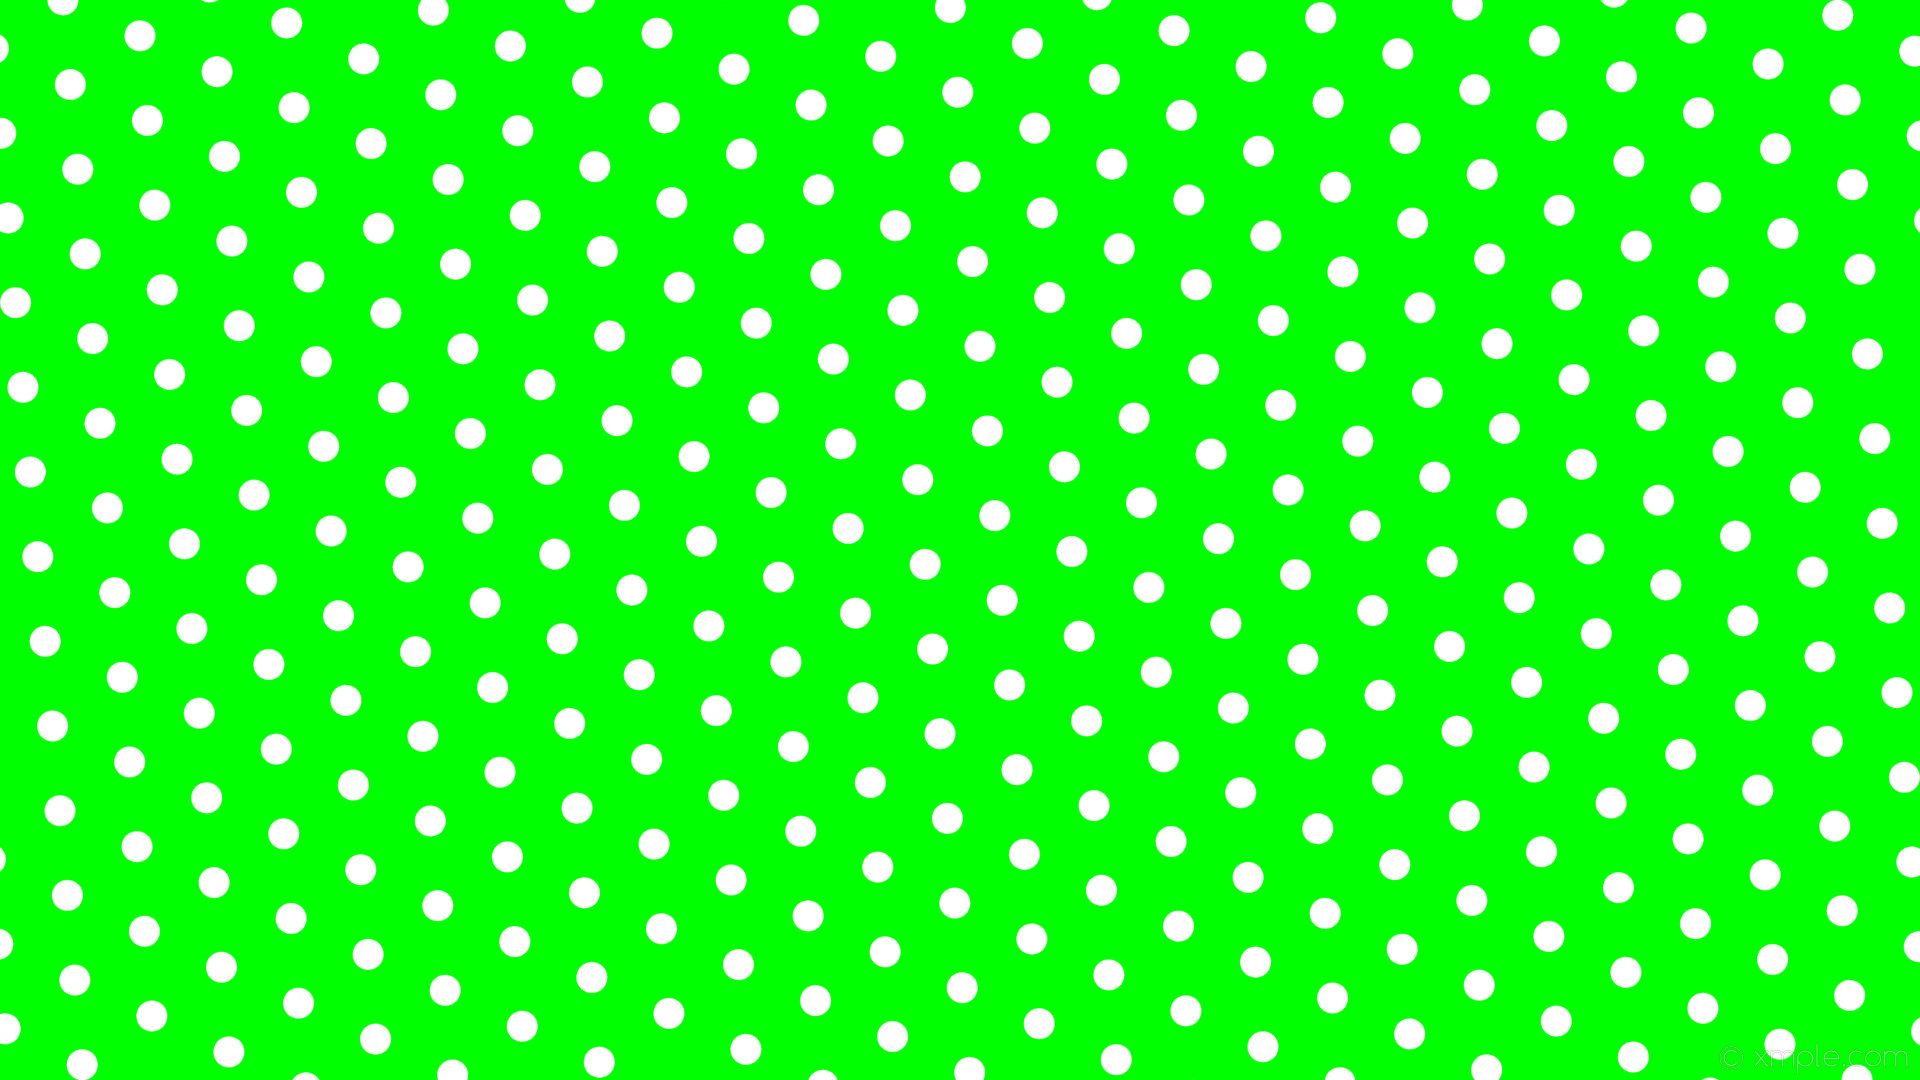 1920x1080 wallpaper dots hexagon green polka white lime #00ff00 #ffffff diagonal 35Â°  31px 85px